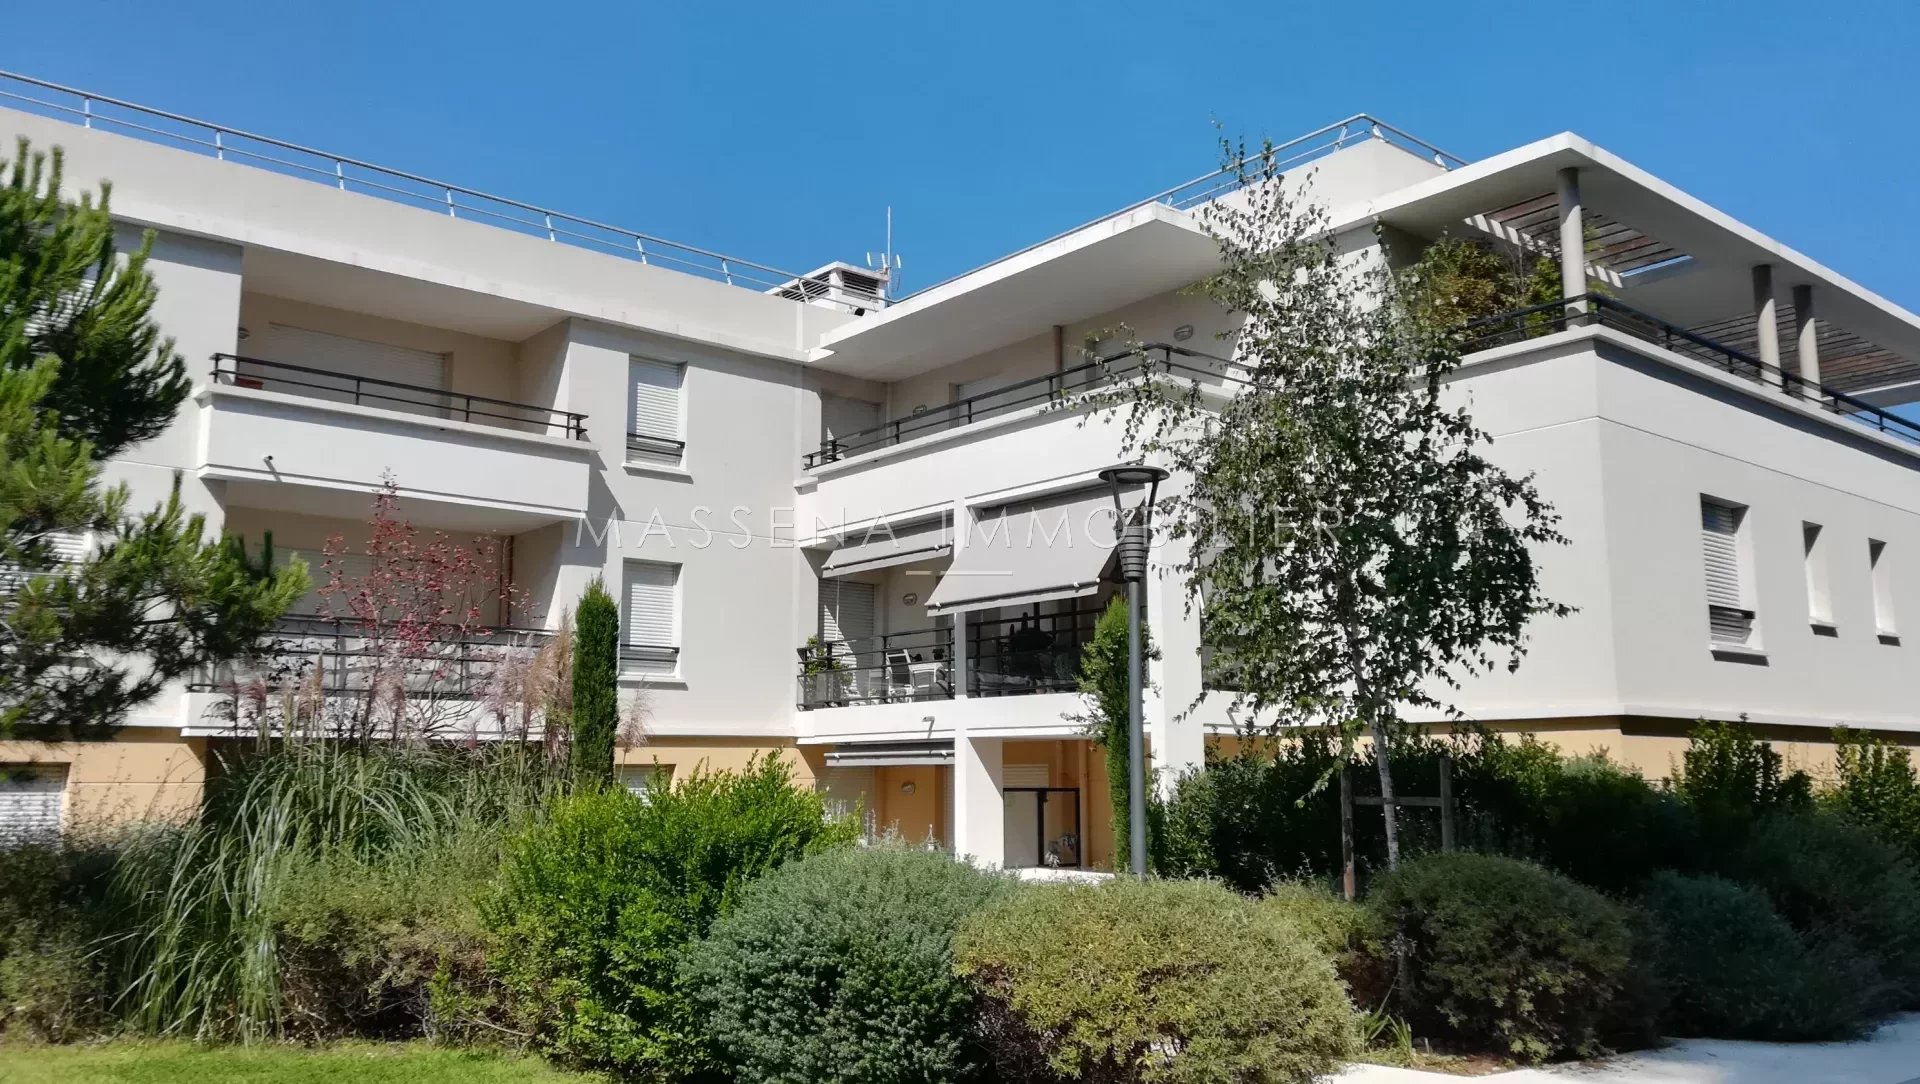 Sale Apartment - Villeneuve-Loubet Vaugrenier